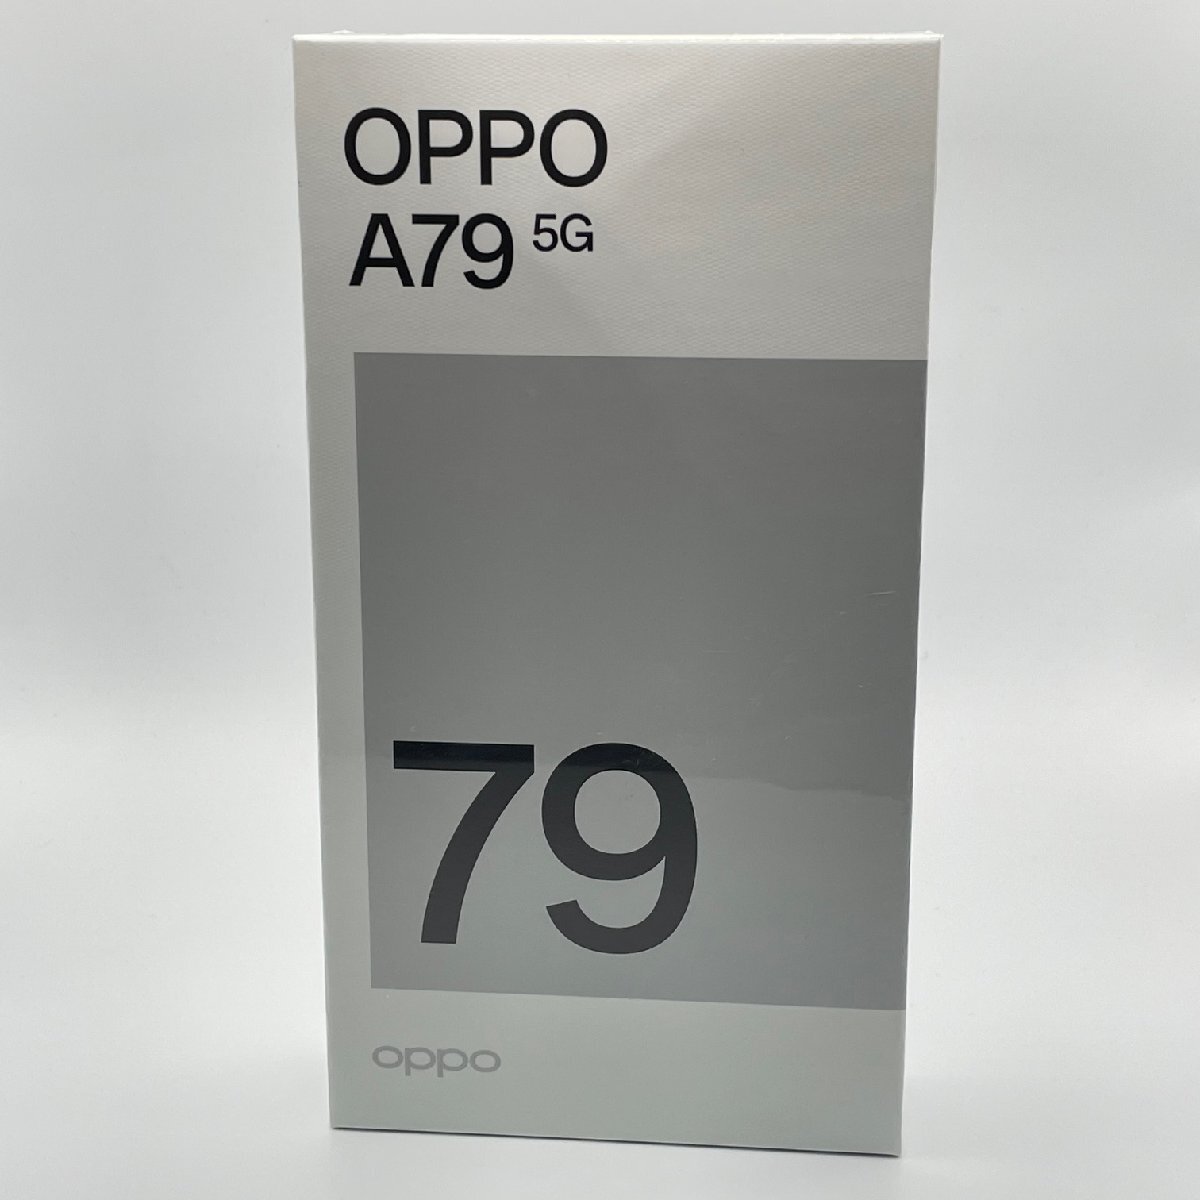 最高の品質の OPPO 未開封品 A79 SIMフリー ワイモバイル